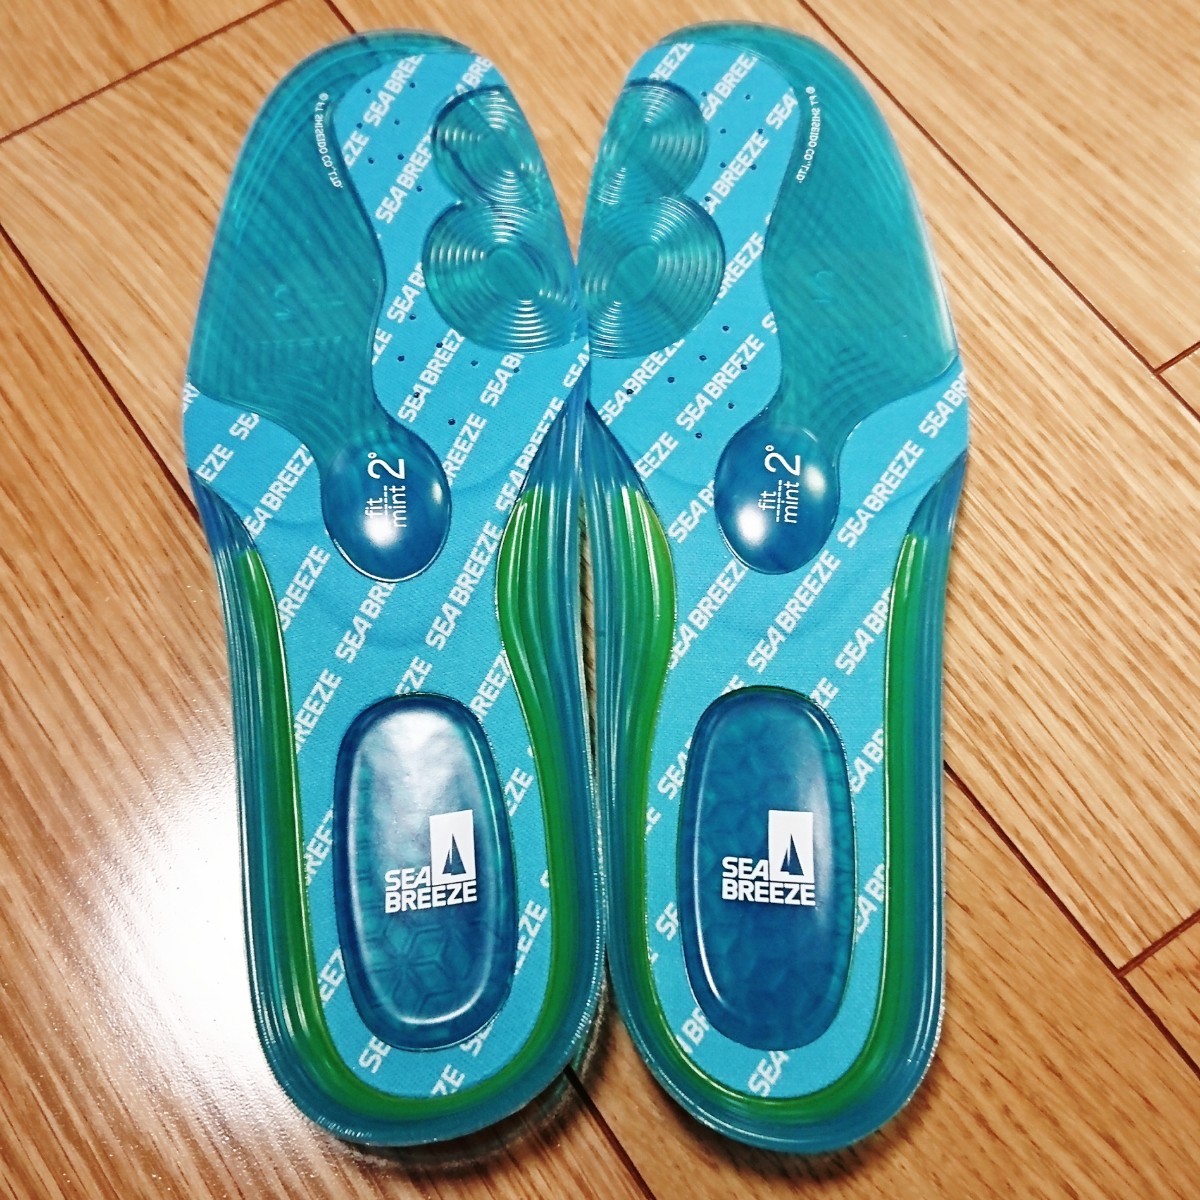  новый товар не использовался * sheave Lee z* стелька M 25.0-26.5cm SEA BREEZE голубой BLUE -2*C. удобный охлаждающий walk SB-001B средний кровать обувь Kiyoshi . чувство гель 